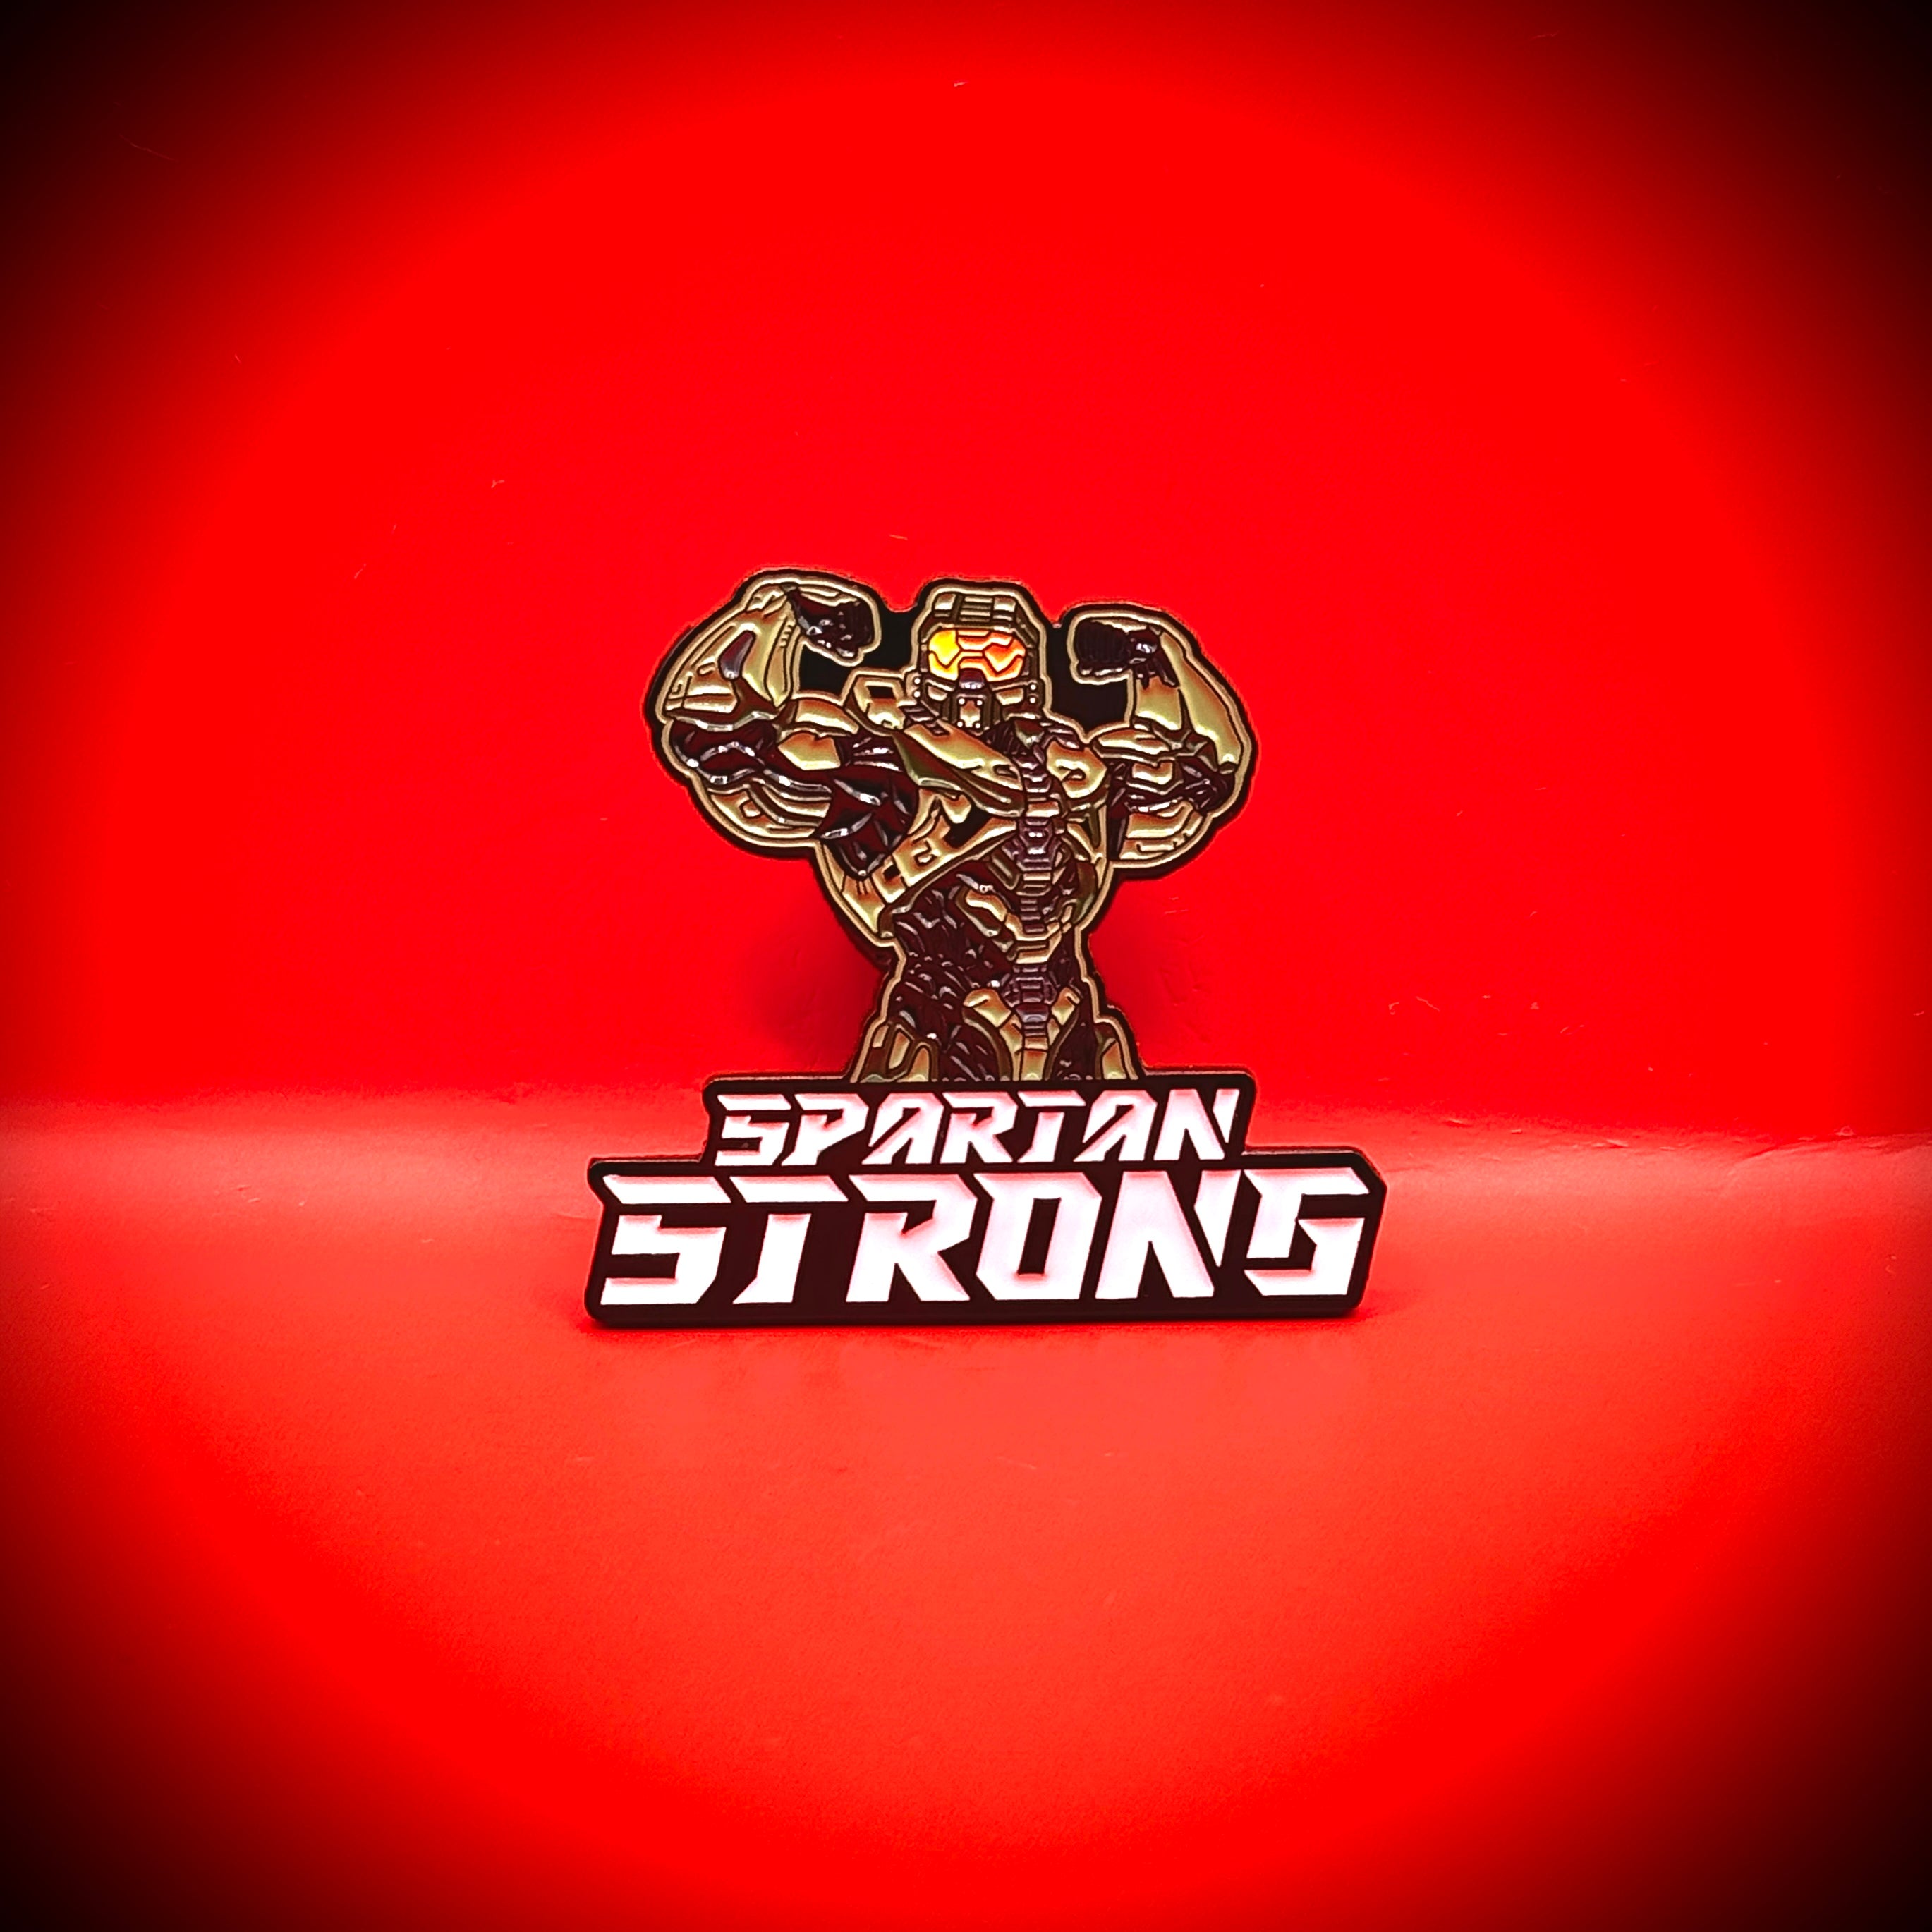 Spartan Strong - Pin